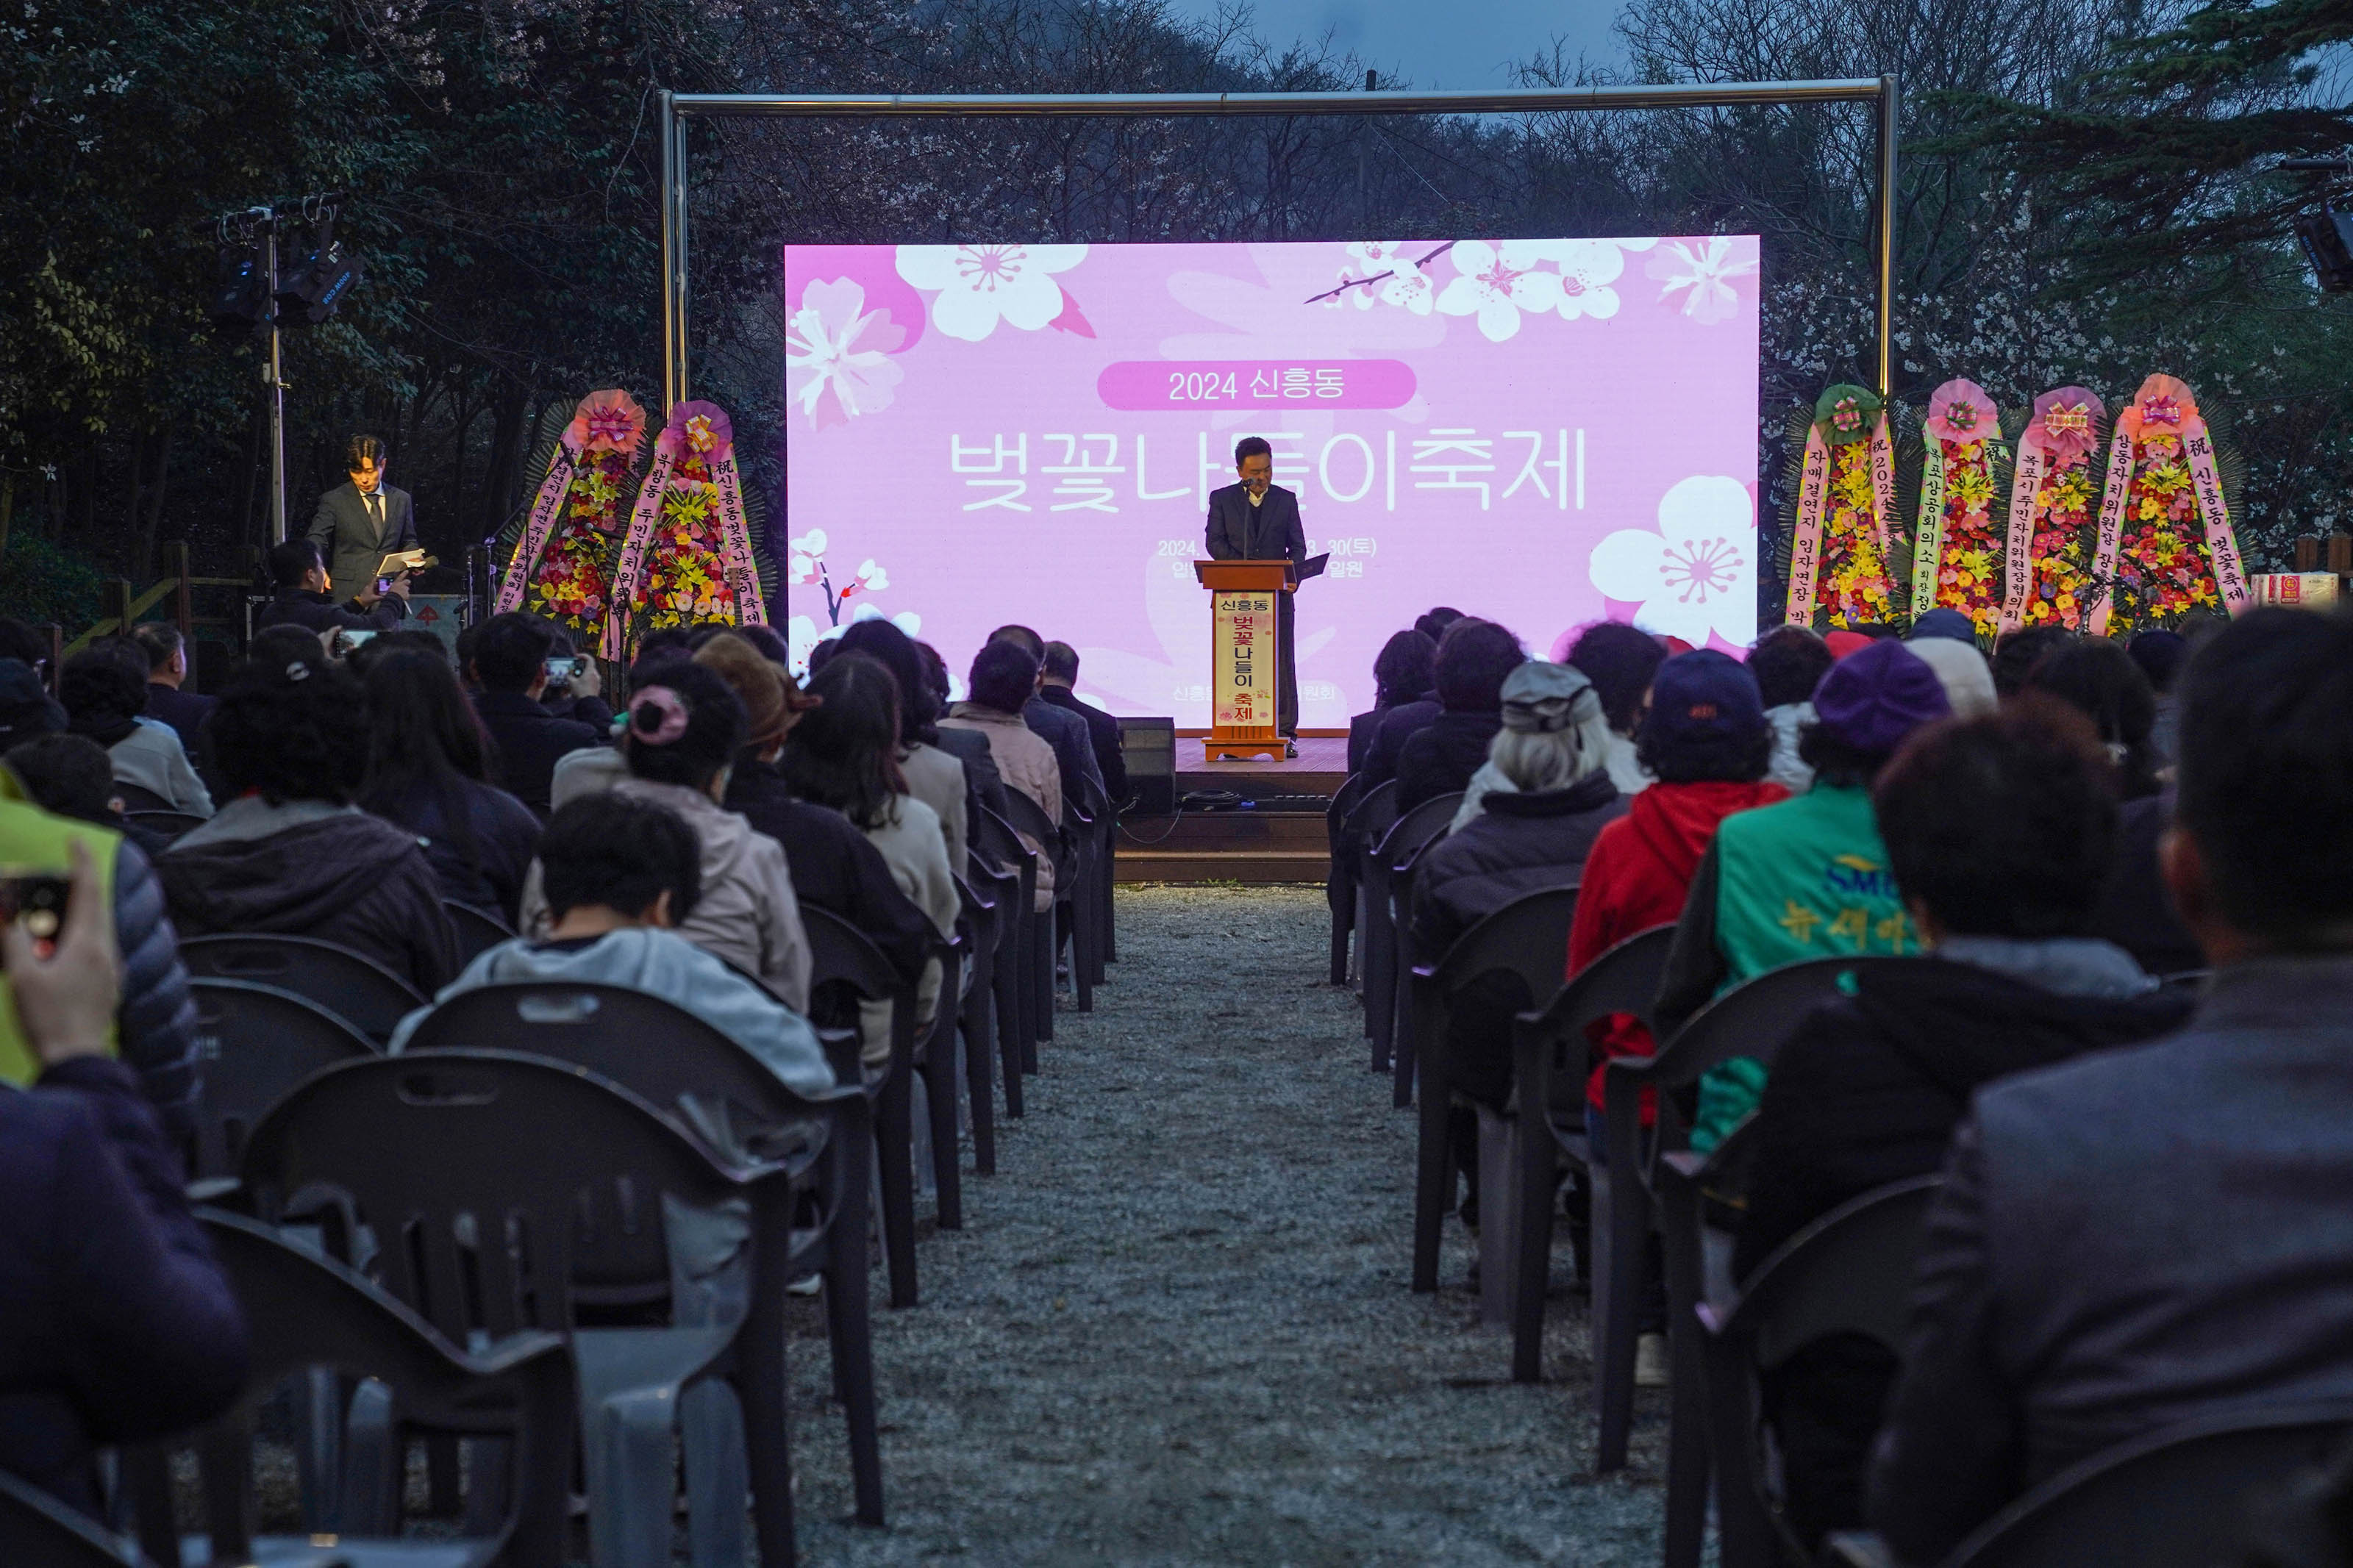 2024 신촌동 벚꽃나들이축제 화면이 핑크빛으로 띄워져 있고, 단상에선 중년의 남성. 6개의 화환도 보인다. 플라스틱 의자에 앉아 있는 축제에 참여한 시민들의 모습